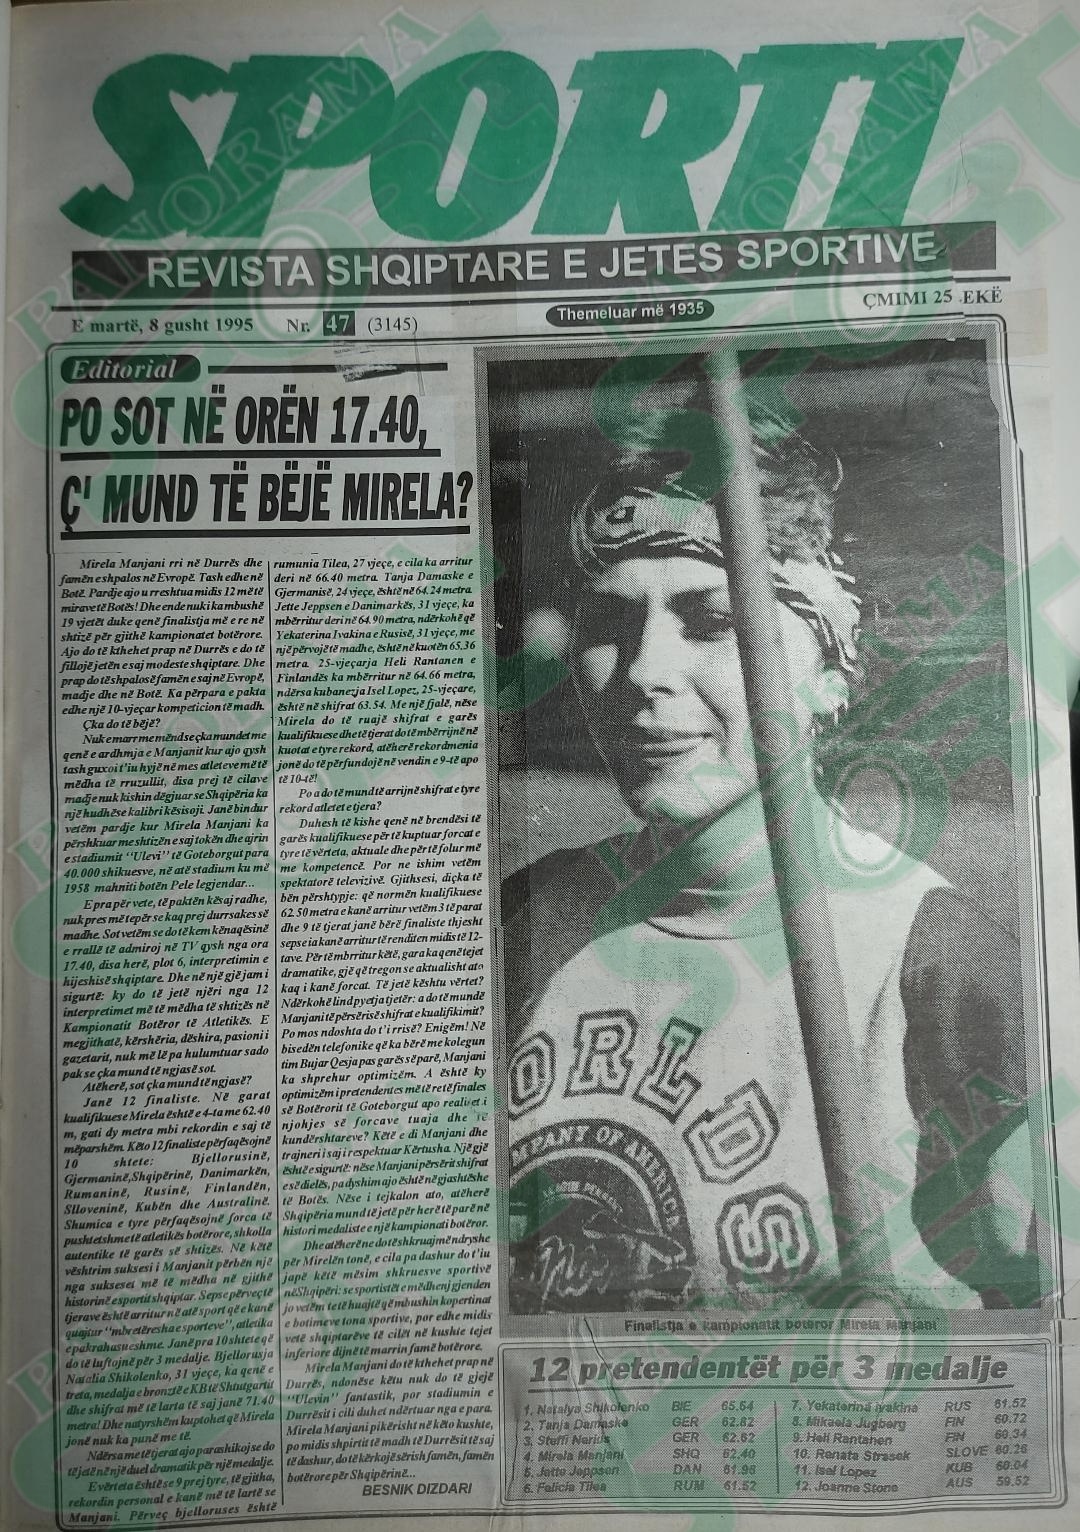 Faqja e parë e gazetës “Sporti”, 8 gusht 1995, kushtuar Mirela Manjanit - finalistes së parë shqiptare në prag të finales së shtizës të Kampionatit Botëror “GOTHENBURG 1995”.